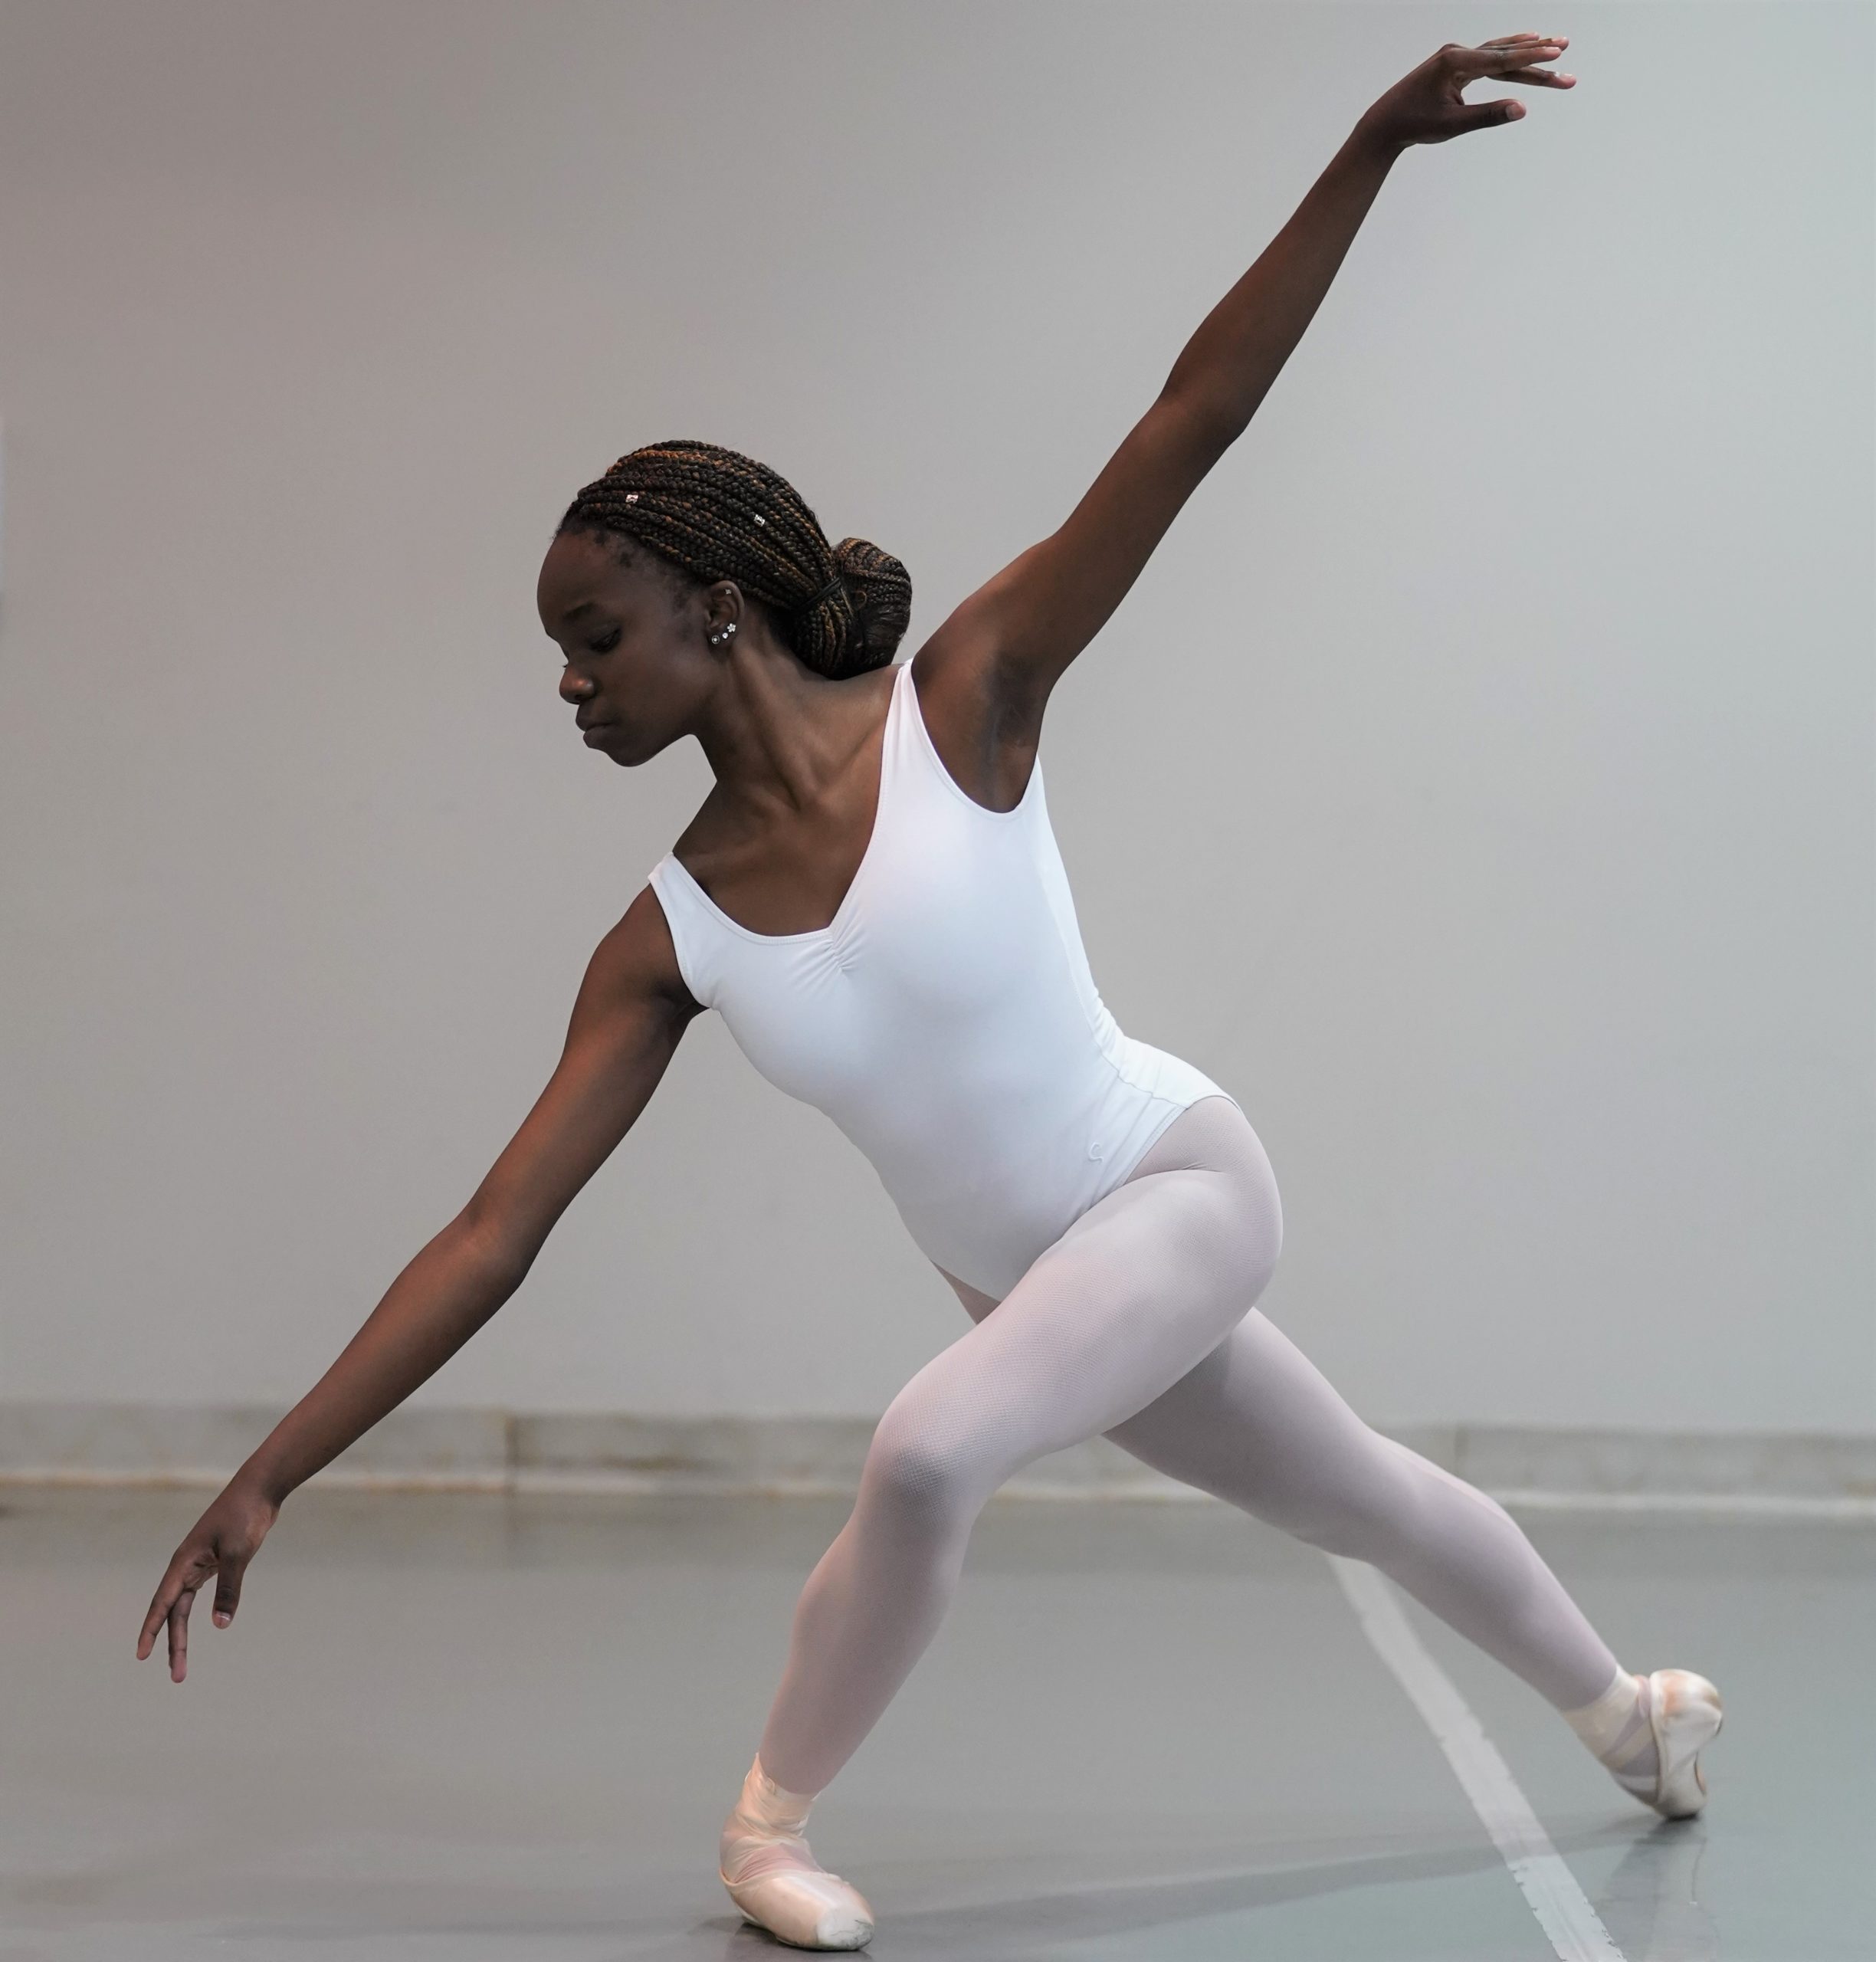 Dancer in studio in a dynamic pose.